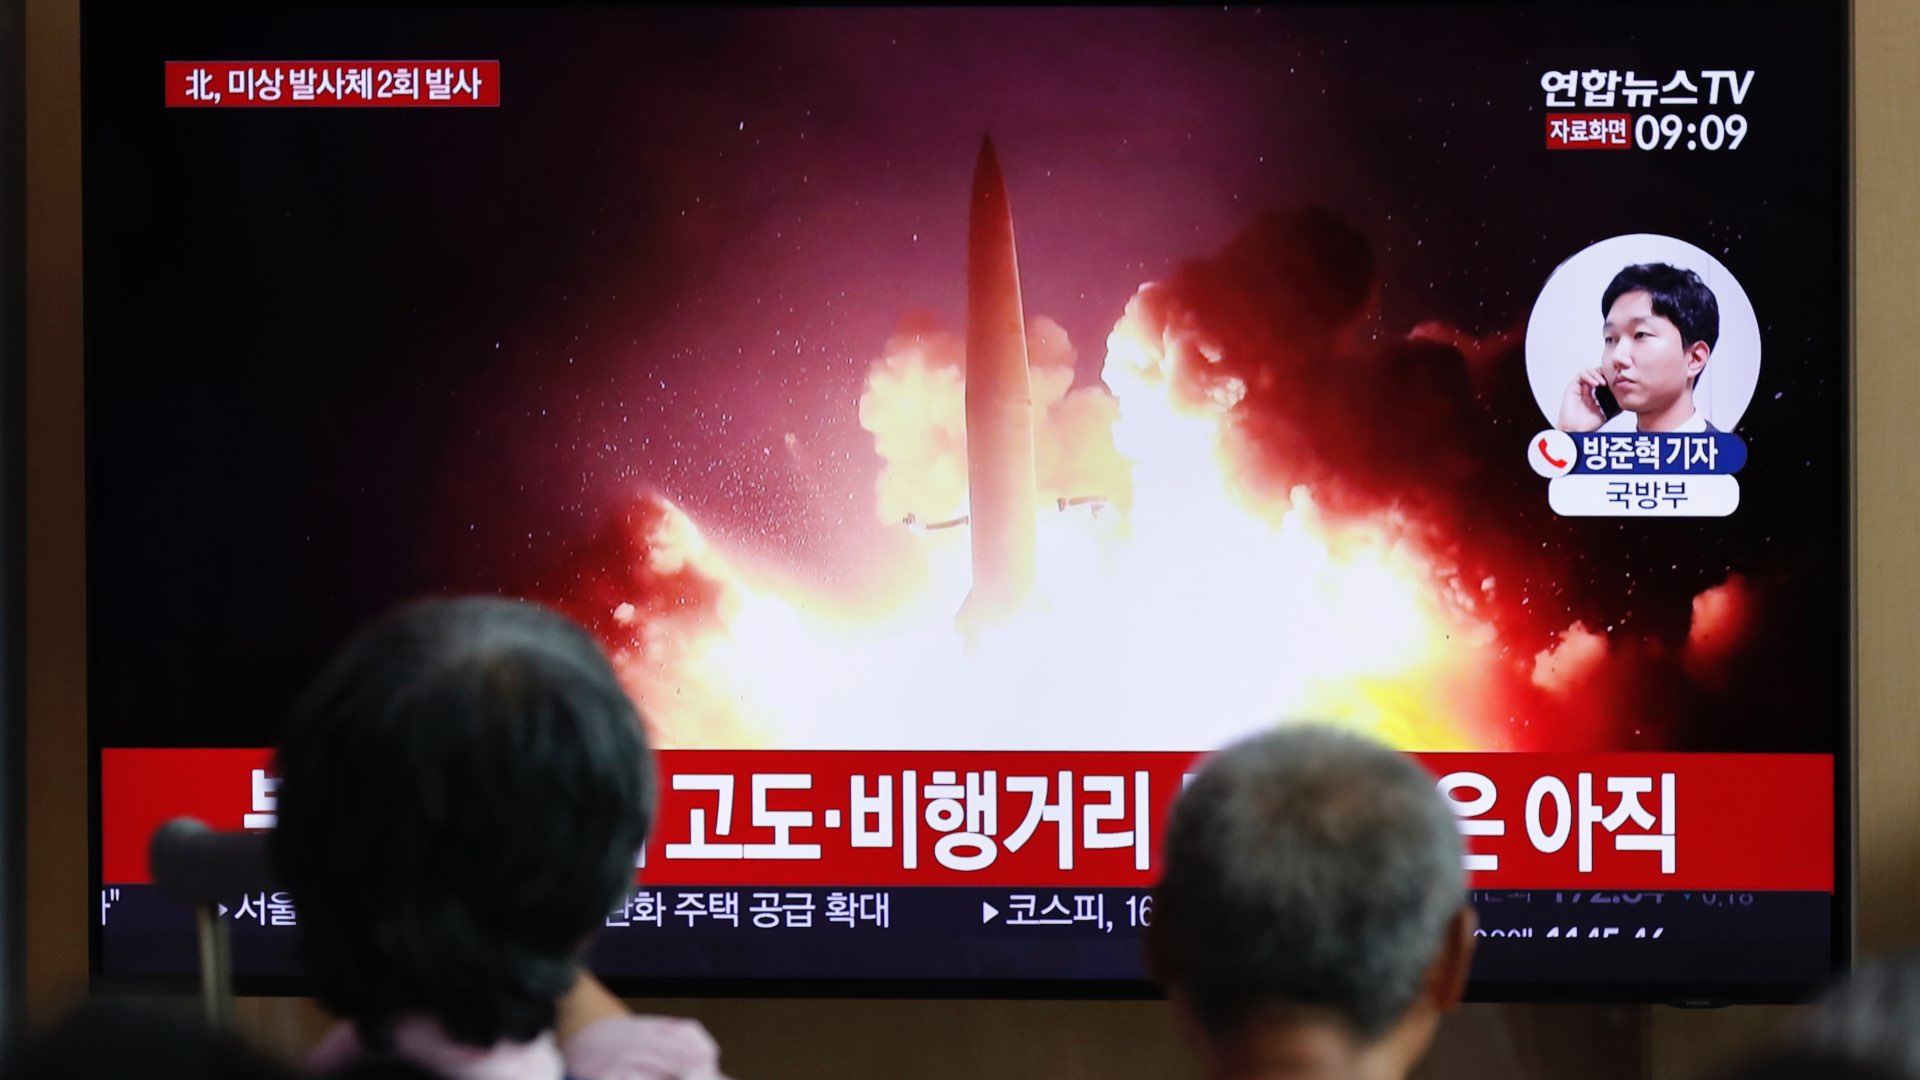 Corea del Norte lanza dos proyectiles y rechaza las conversaciones de paz con Corea del Sur